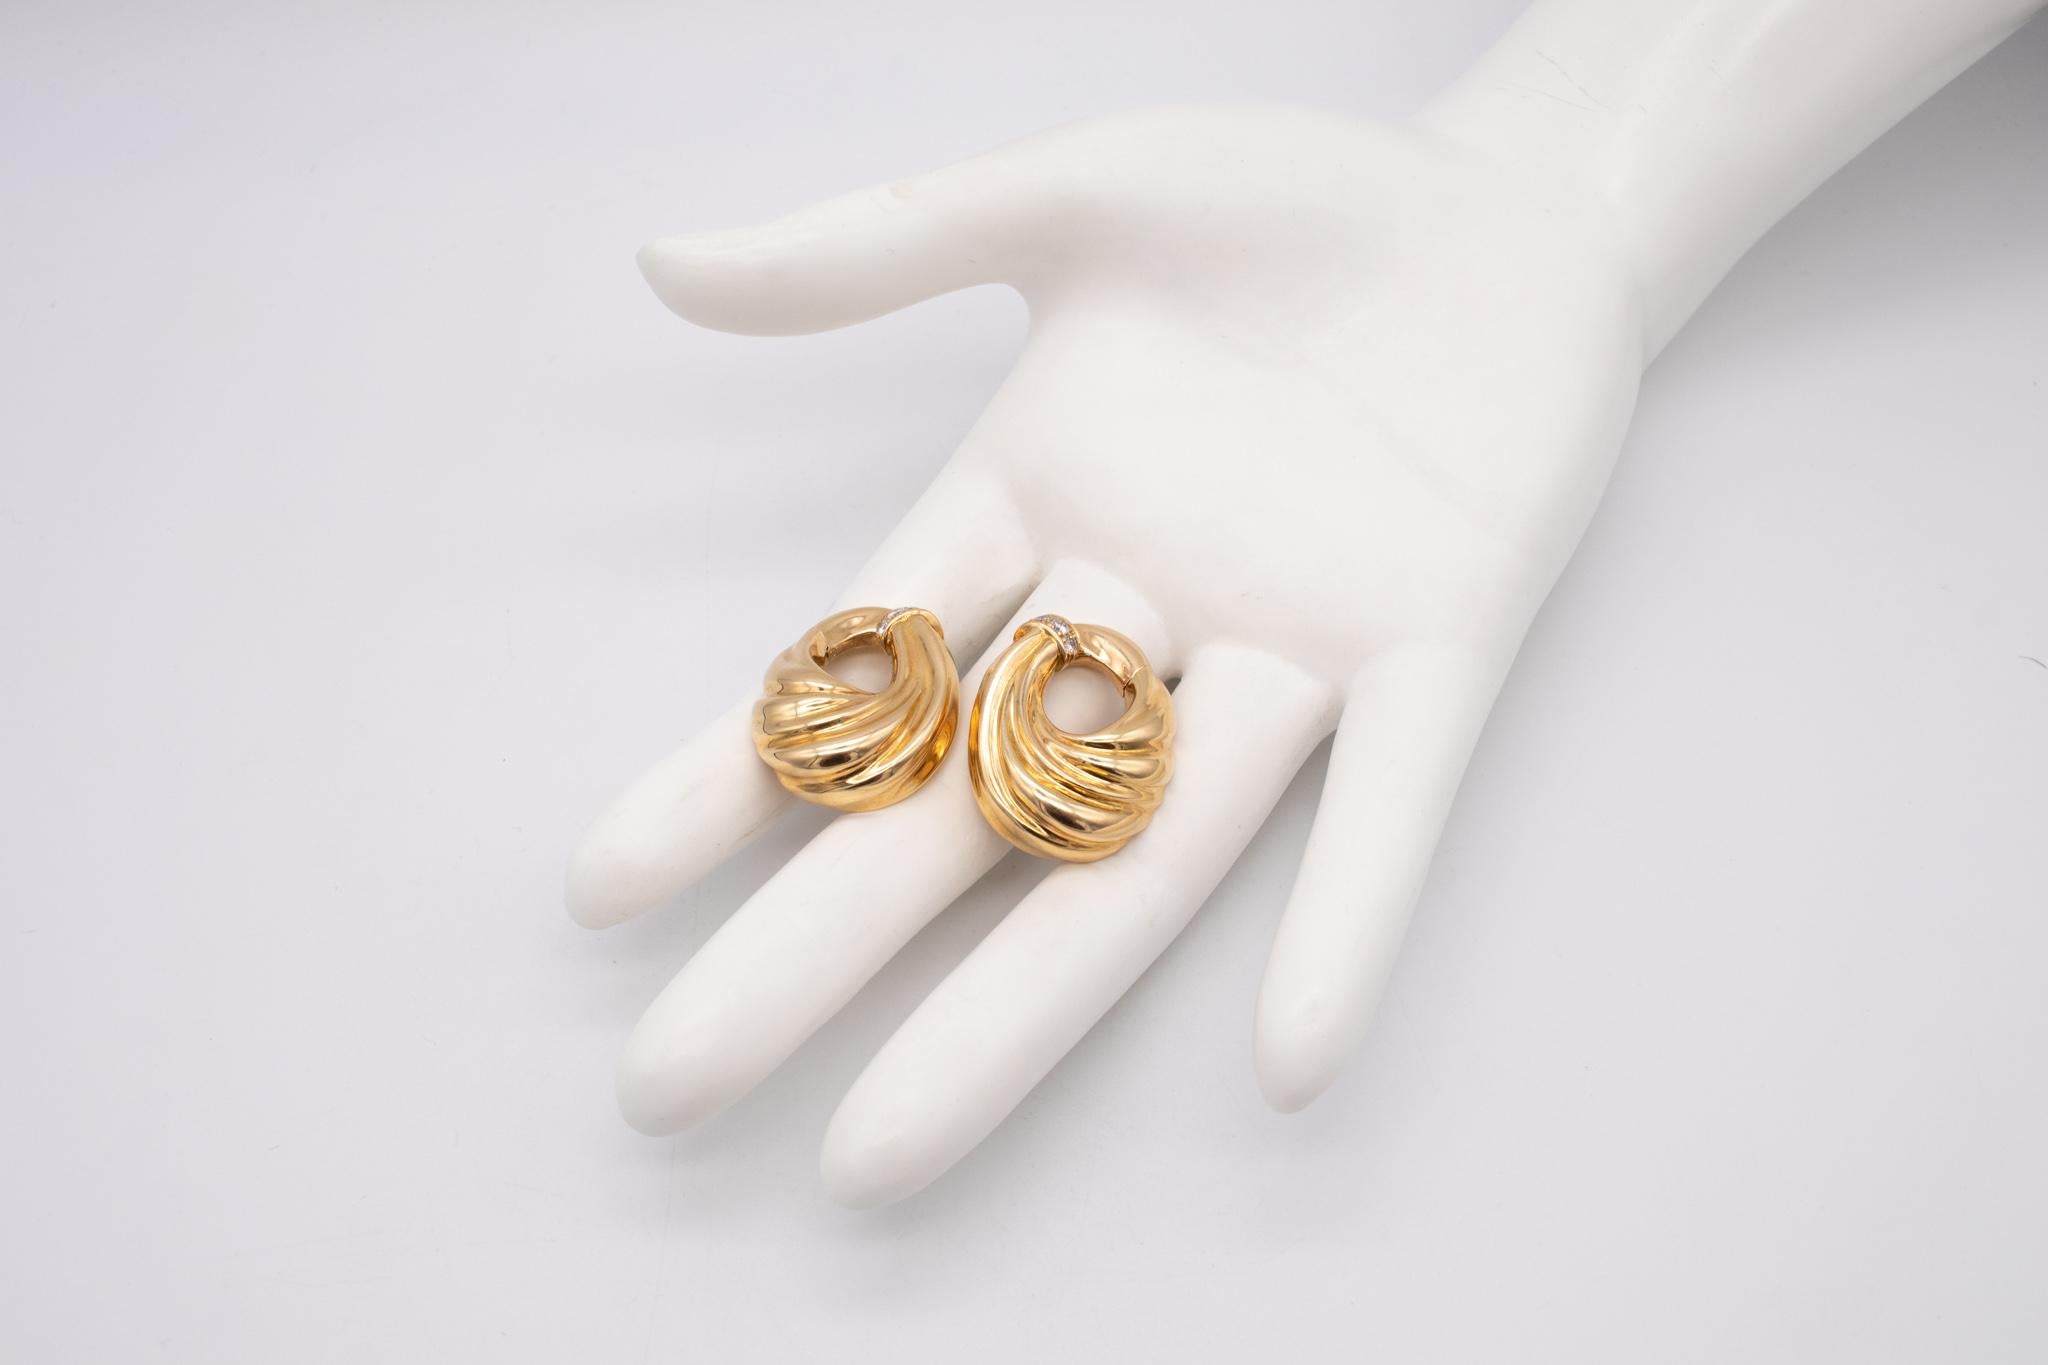 Ein Paar mit Juwelen besetzte Ohrclips von Van Cleef & Arpels.

Tolle Clips, die in den frühen 1970er Jahren von der Maison in Paris, Frankreich, entwickelt wurden. Dieses Paar Ohrringe wurde sorgfältig mit drapierten und geriffelten Mustern aus